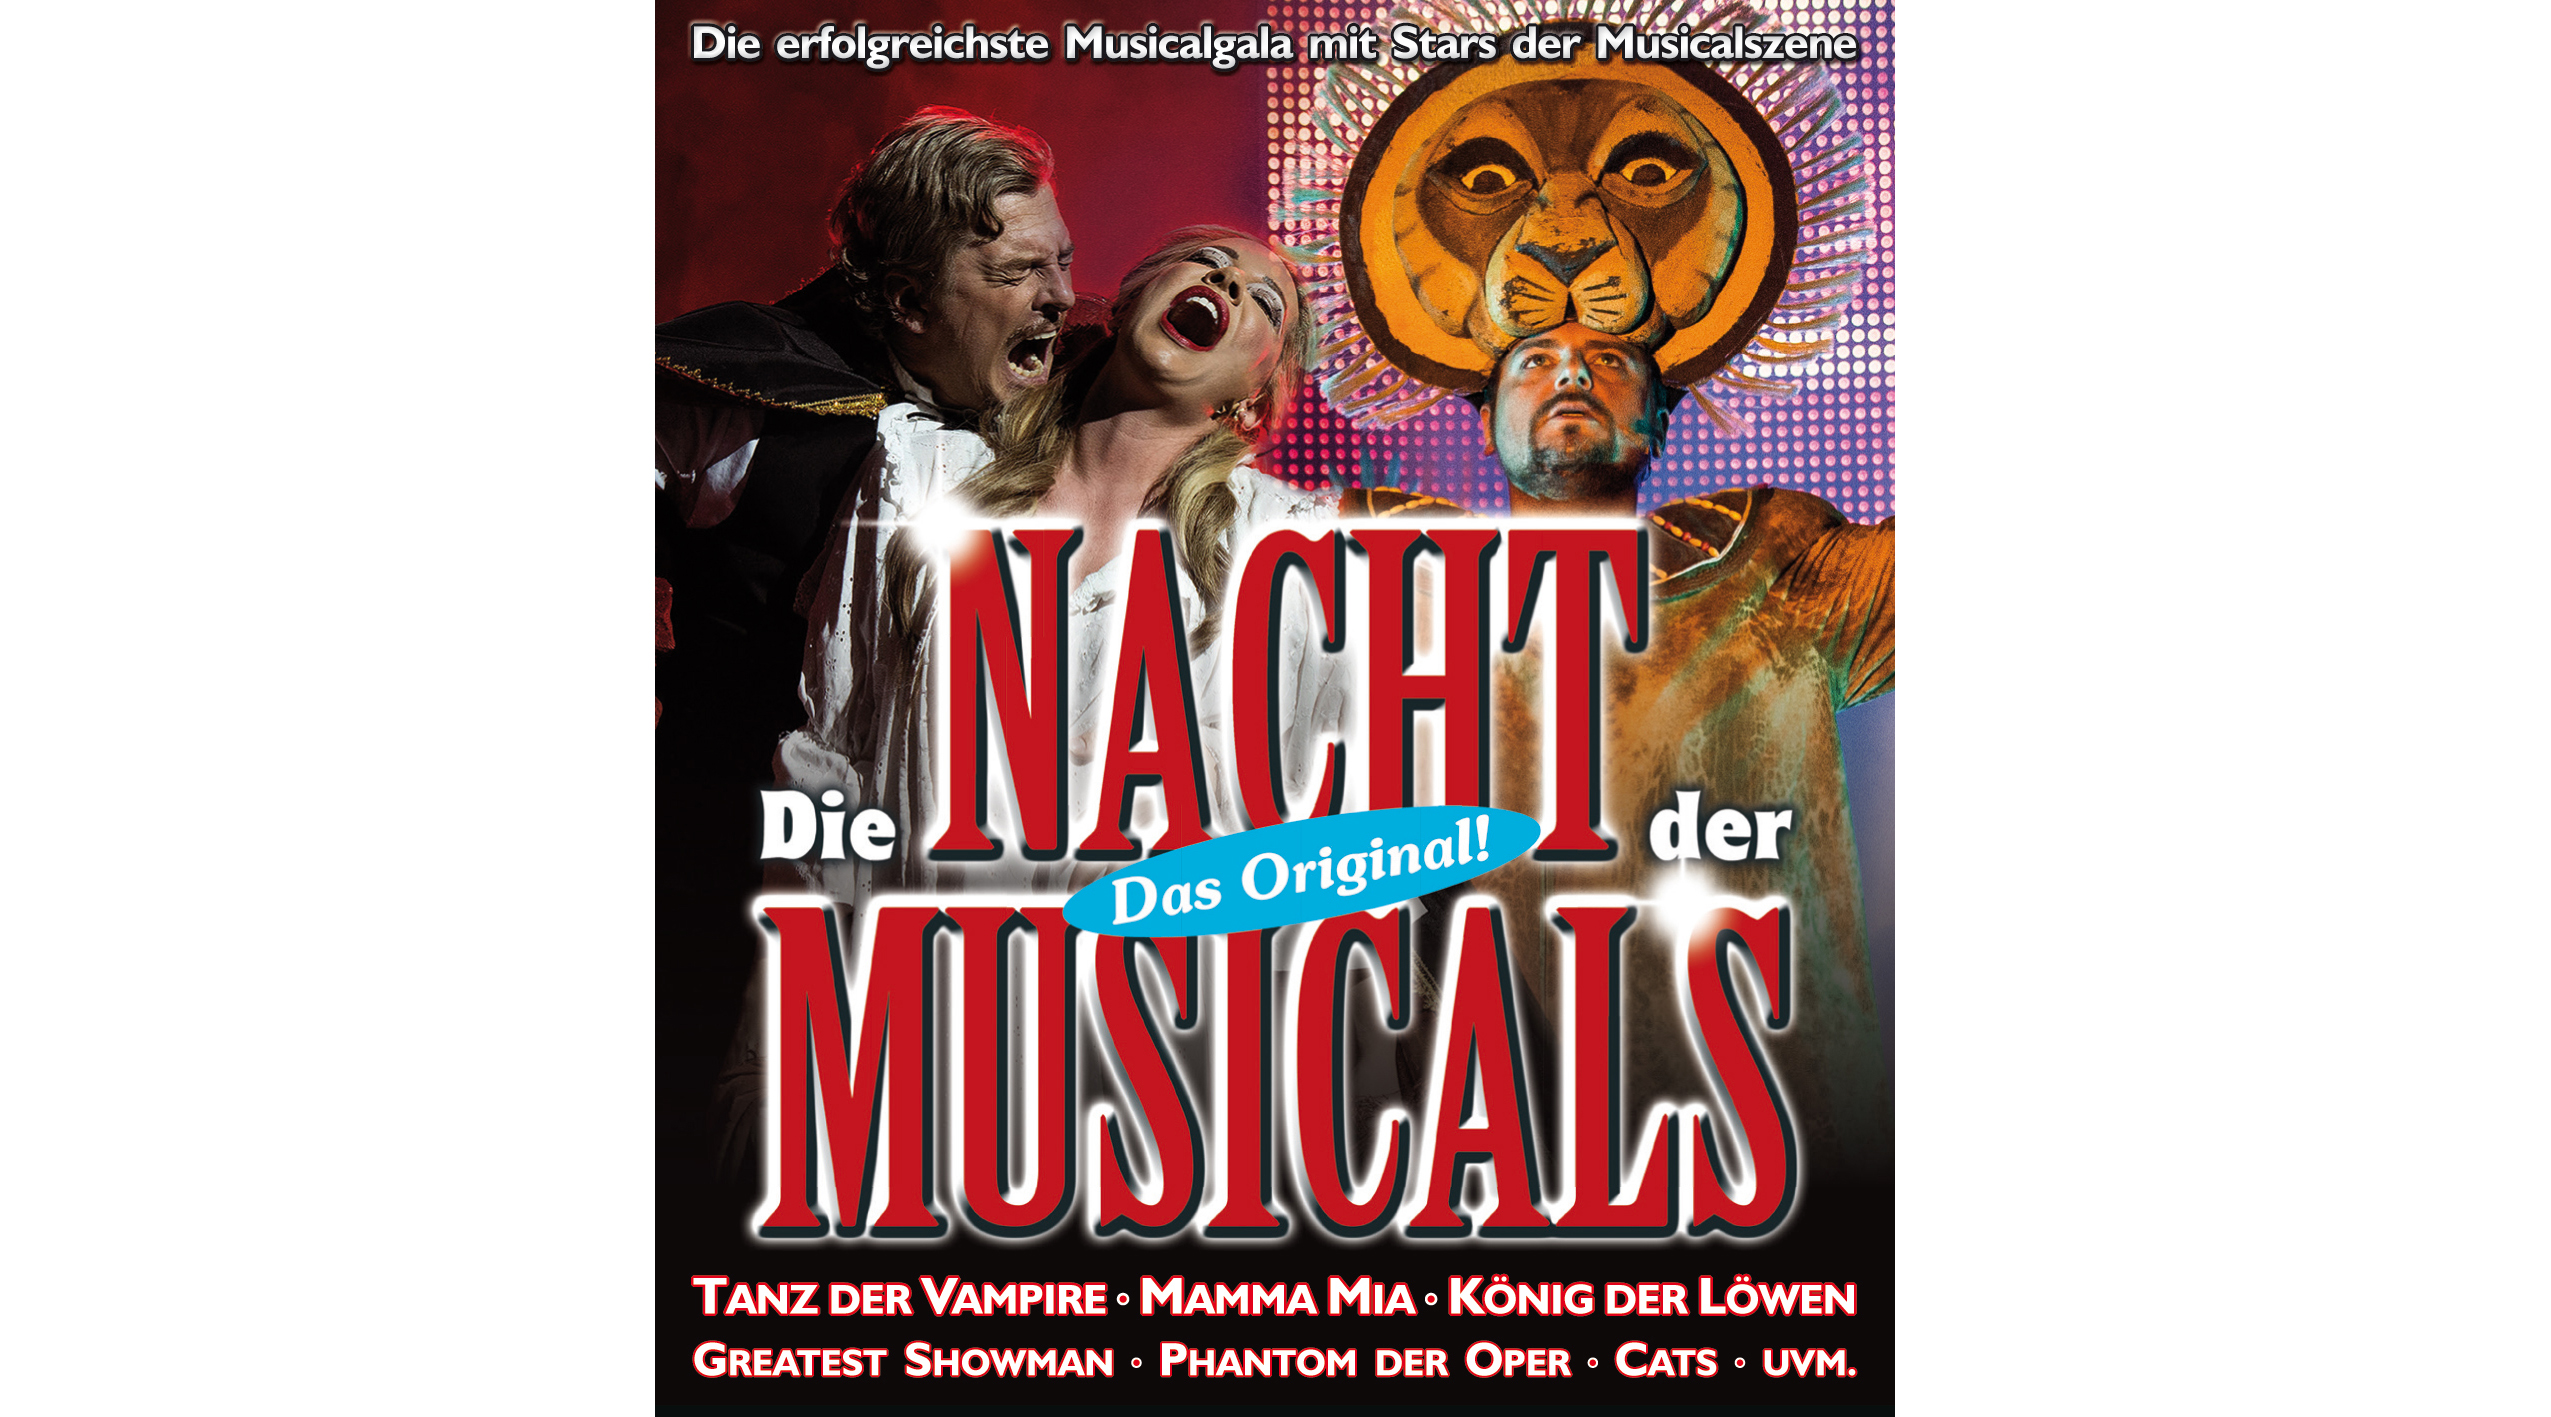 2 Eintrittskarten - PK1 - für DIE NACHT DER MUSICALS am 25.3.2022 in München